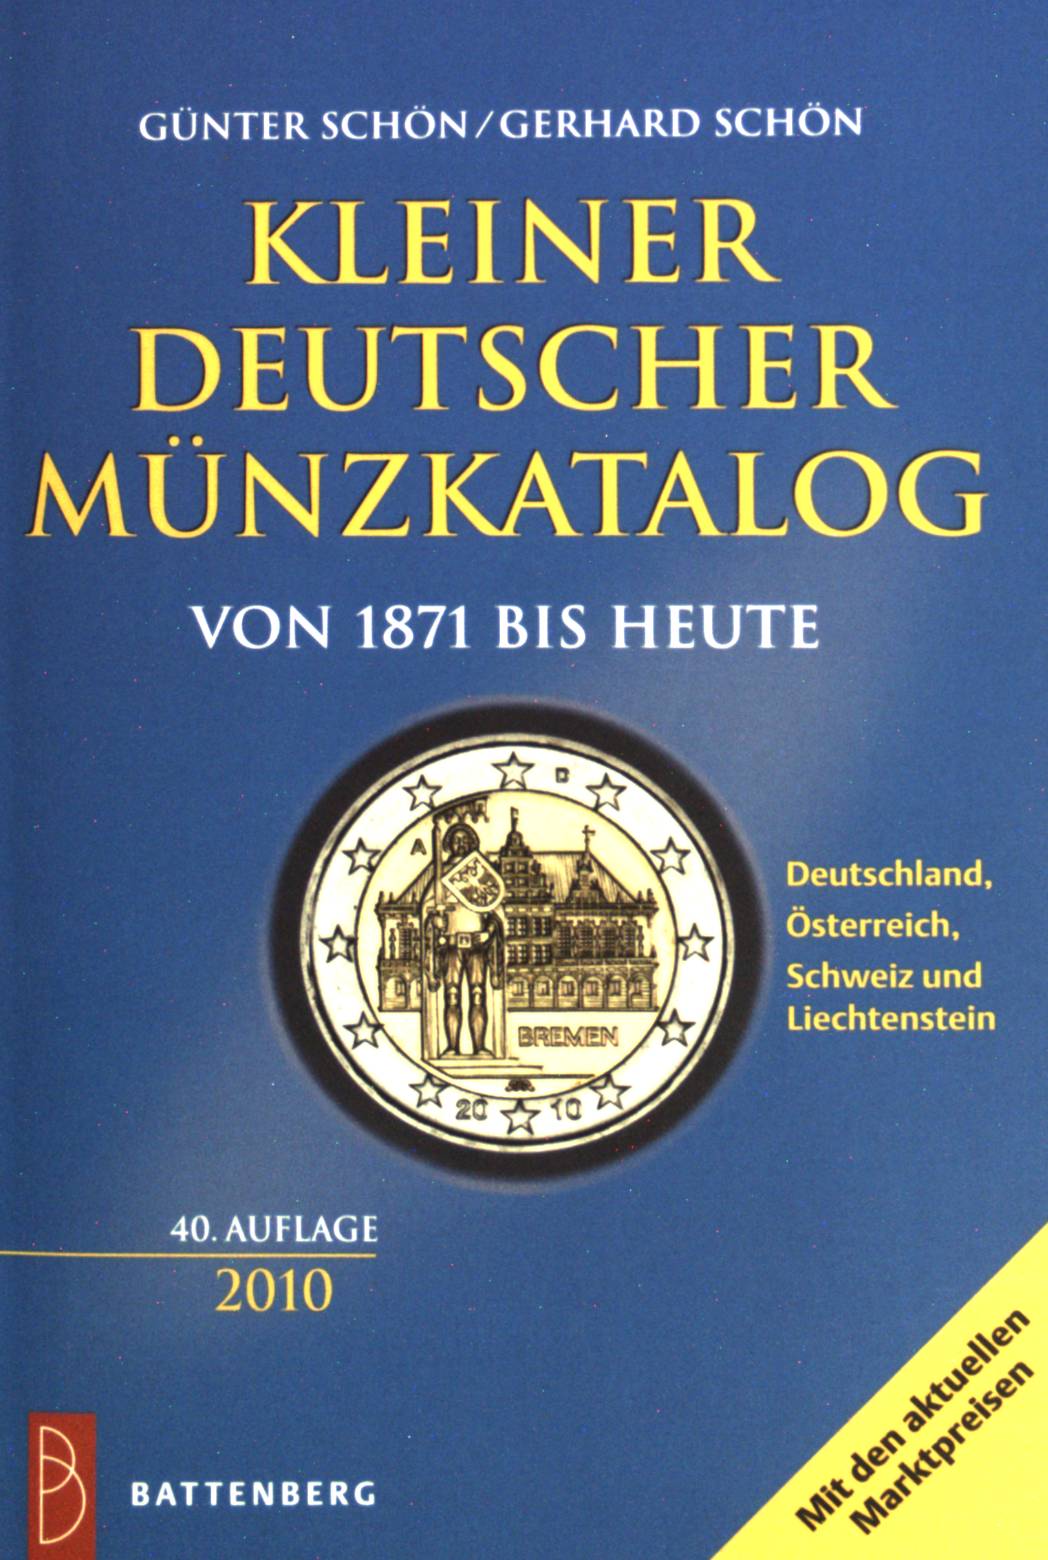 Kleiner Deutscher Münzkatalog 2010: von 1871 bis heute. - Schön, Günter und Gerhard Schön